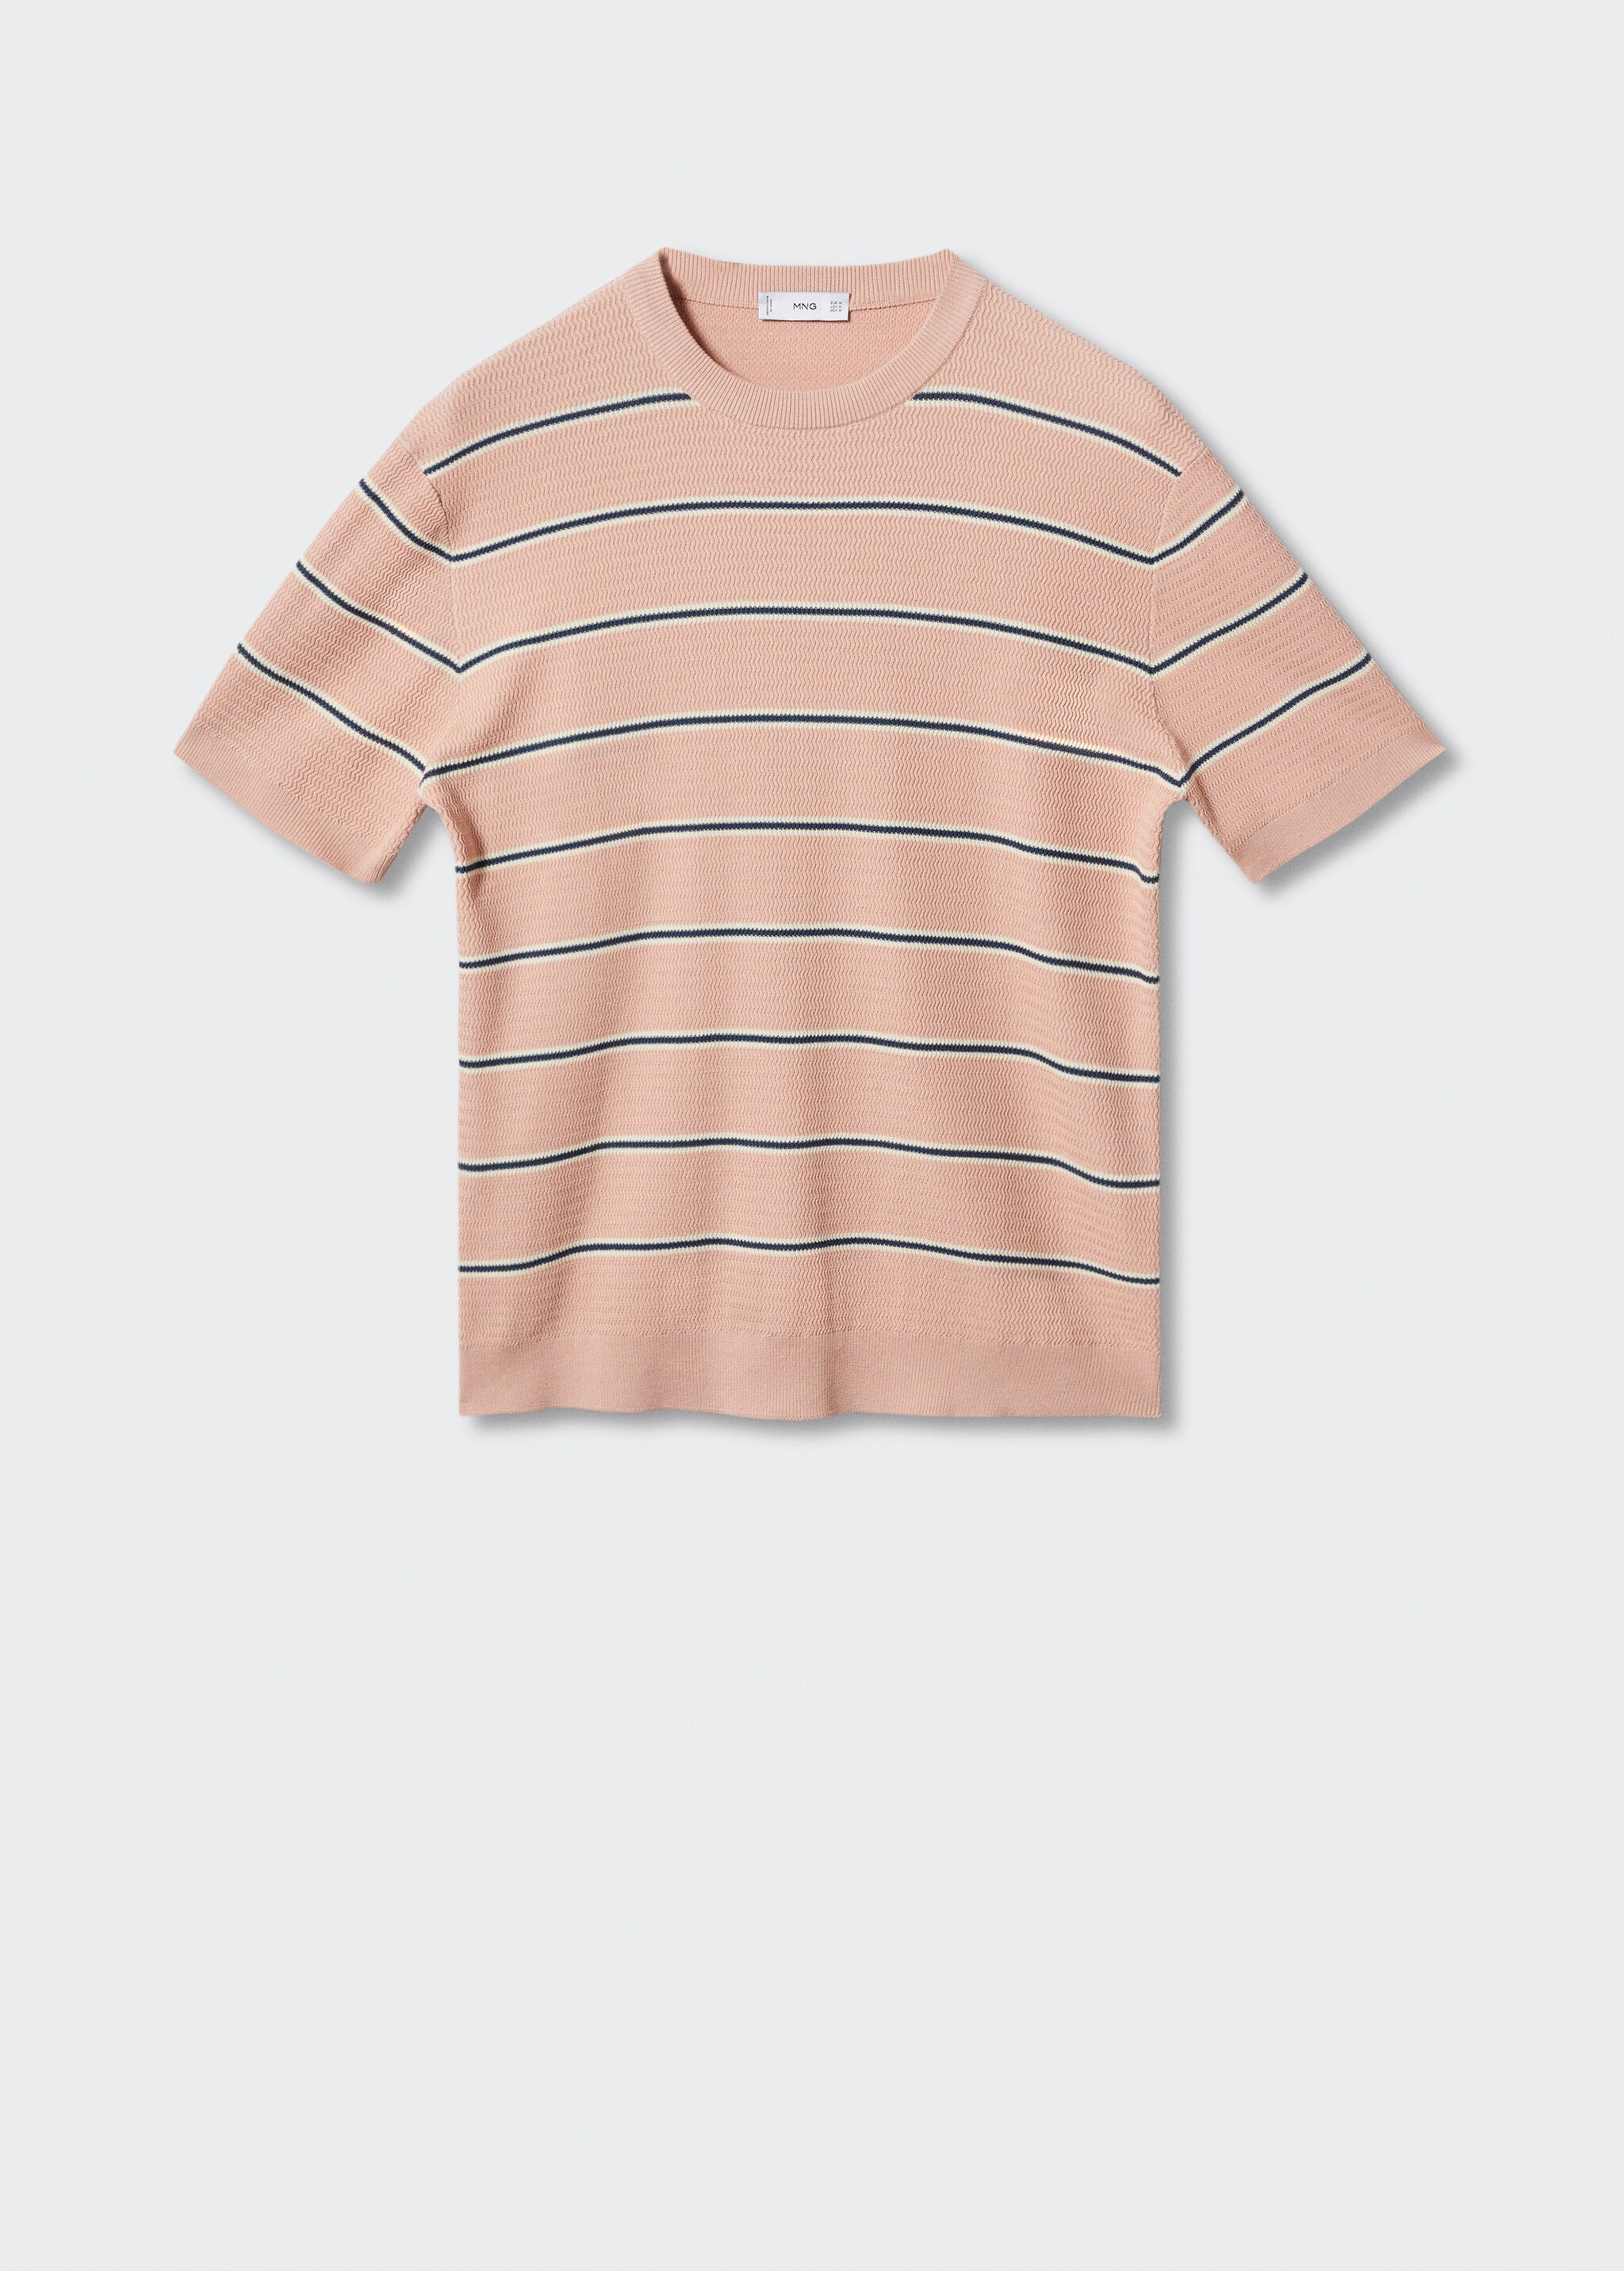 Camiseta punto fino algodón - Artículo sin modelo